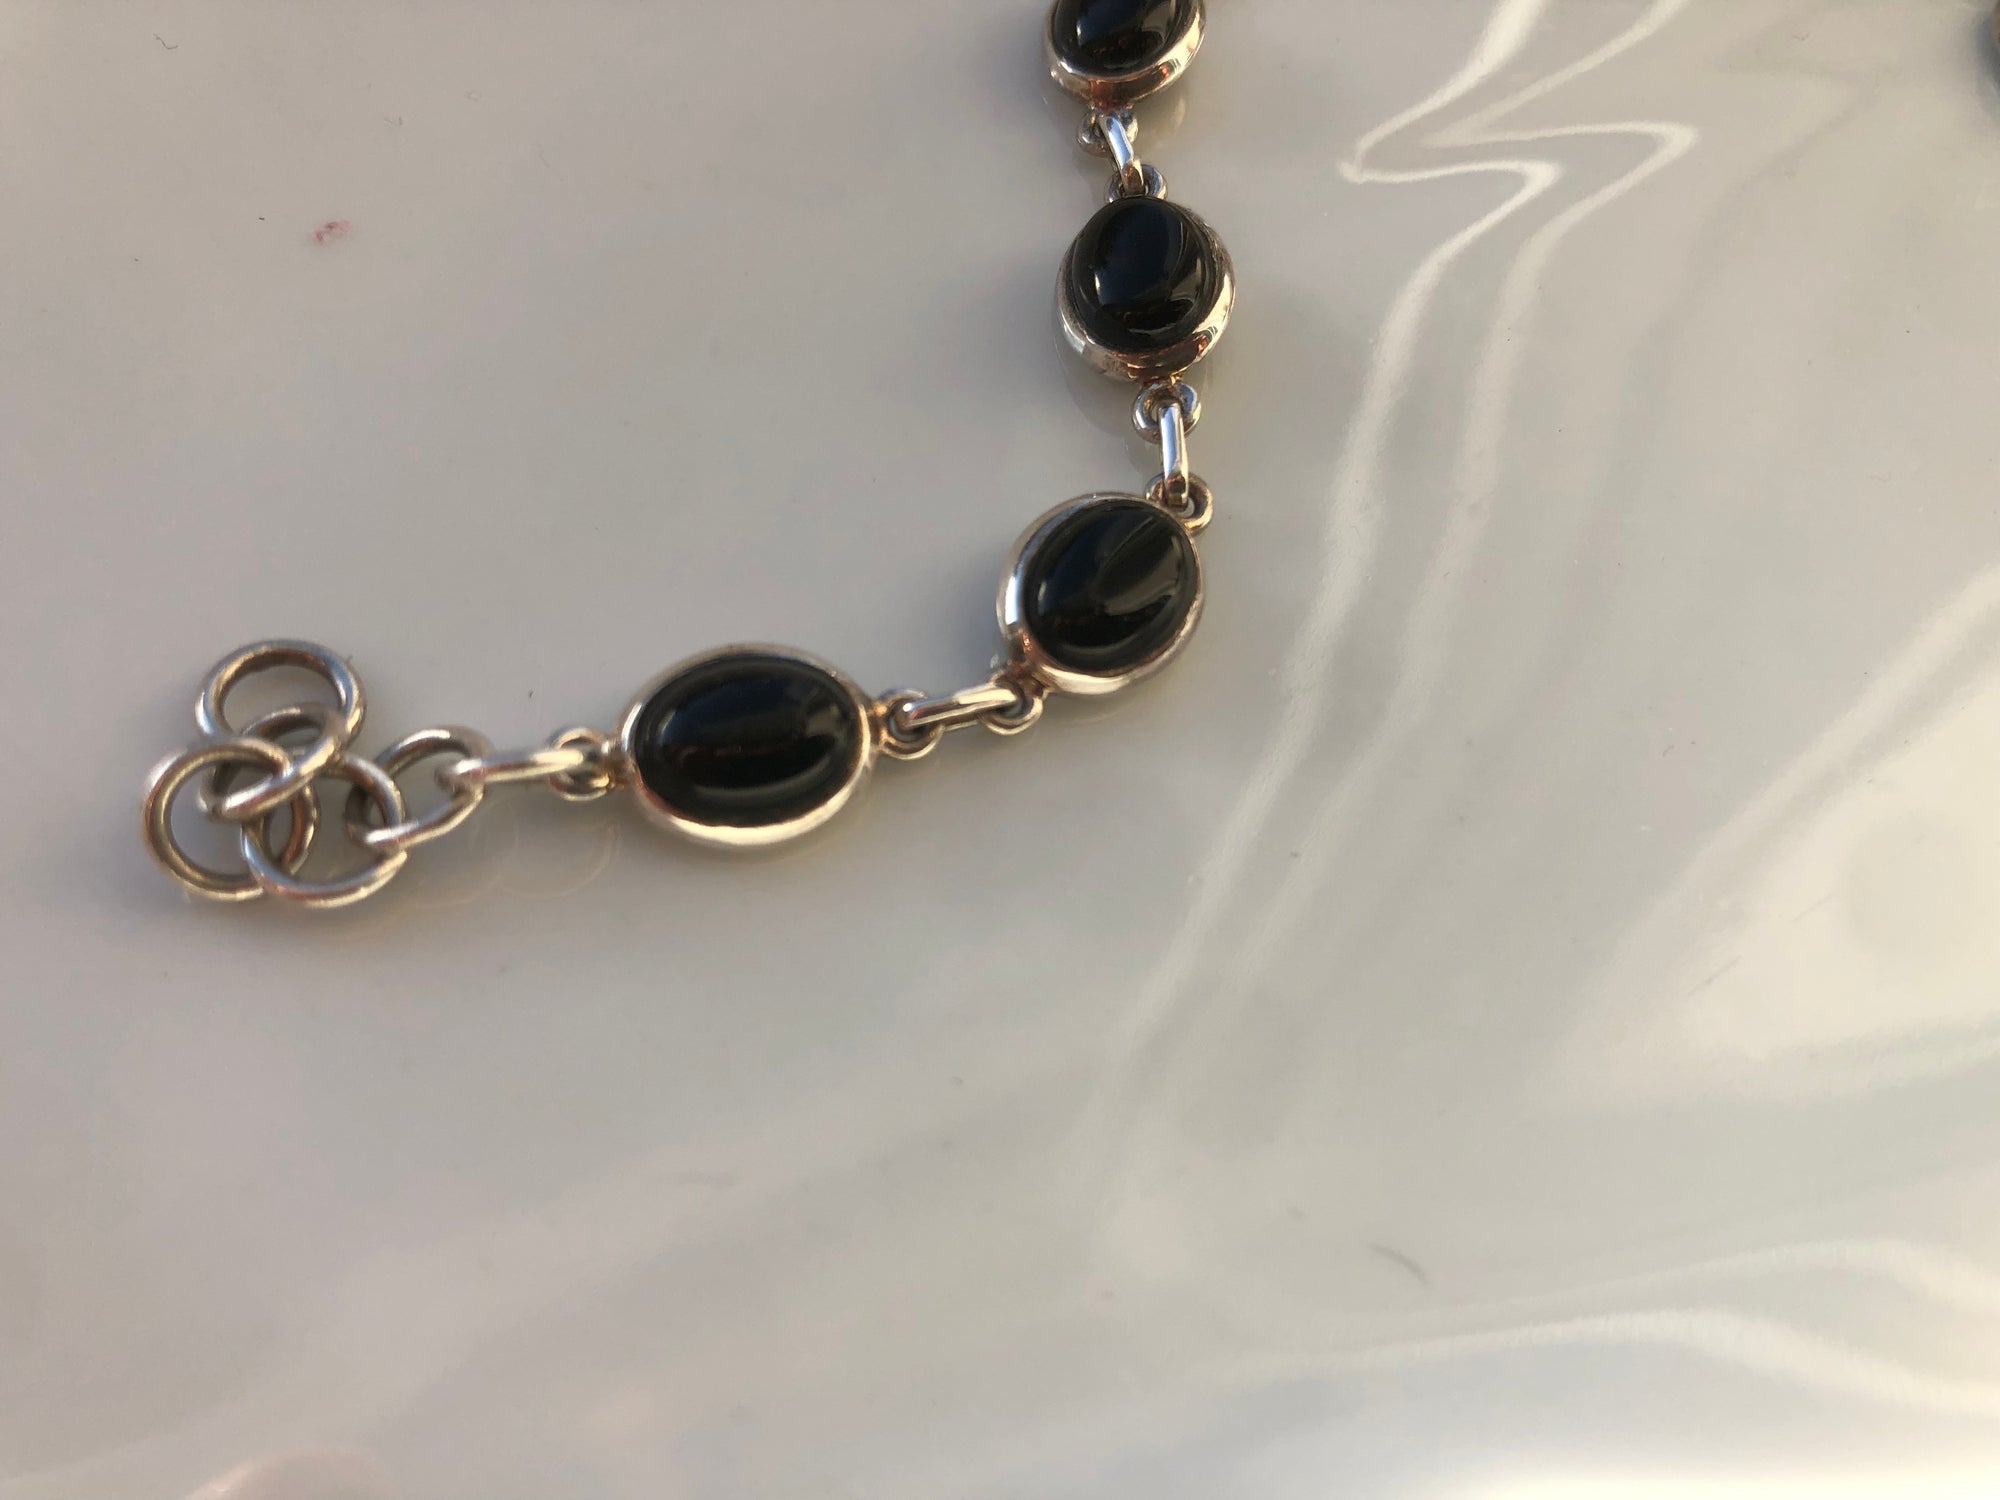 Oval Black Onyx Sterling Silver Bracelet